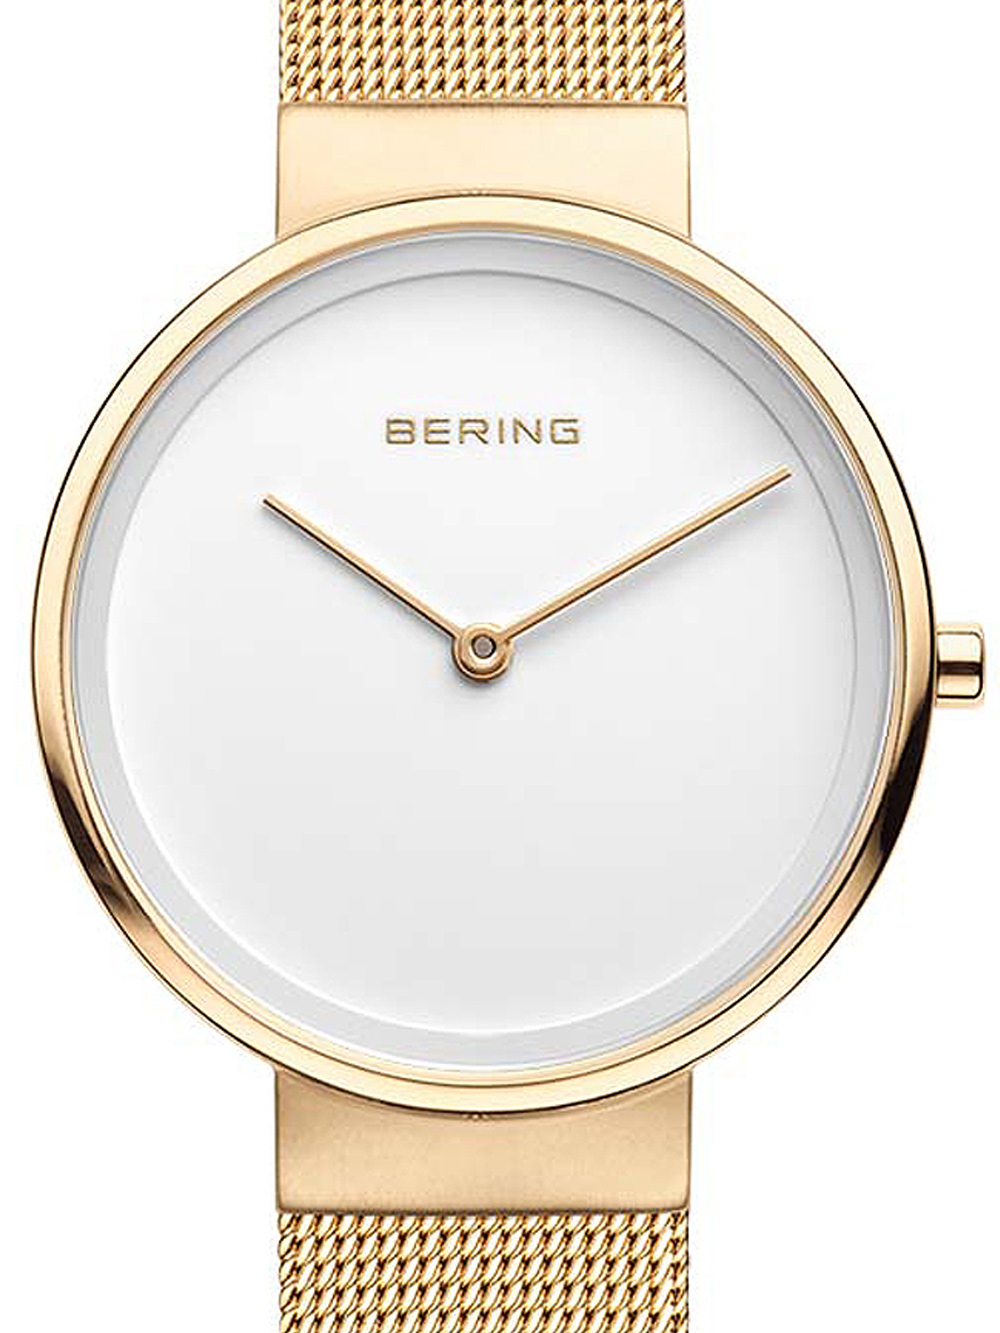 Dámské hodinky Bering 14531-334